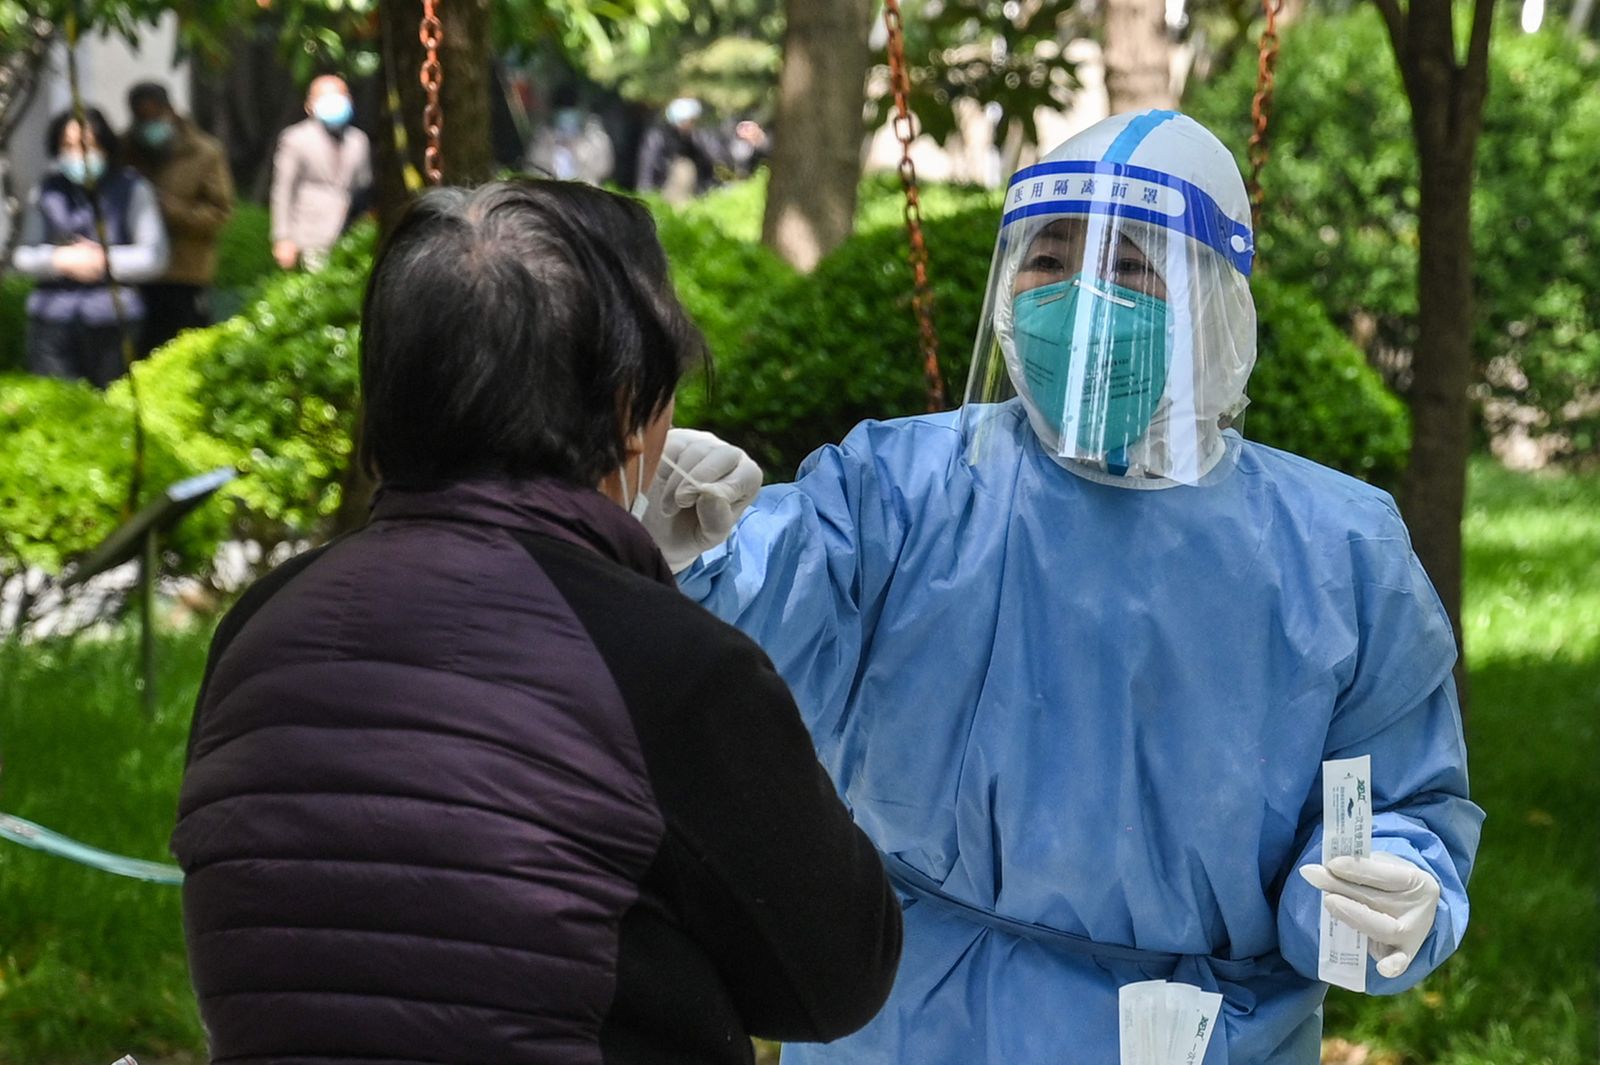 عاملة صحية تأخذ مسحة لفيروس كورونا في مجمع سكني خلال المرحلة الثانية من الإغلاق في إحدى مناطق شنغهاي. 6 أبريل 2022 - AFP